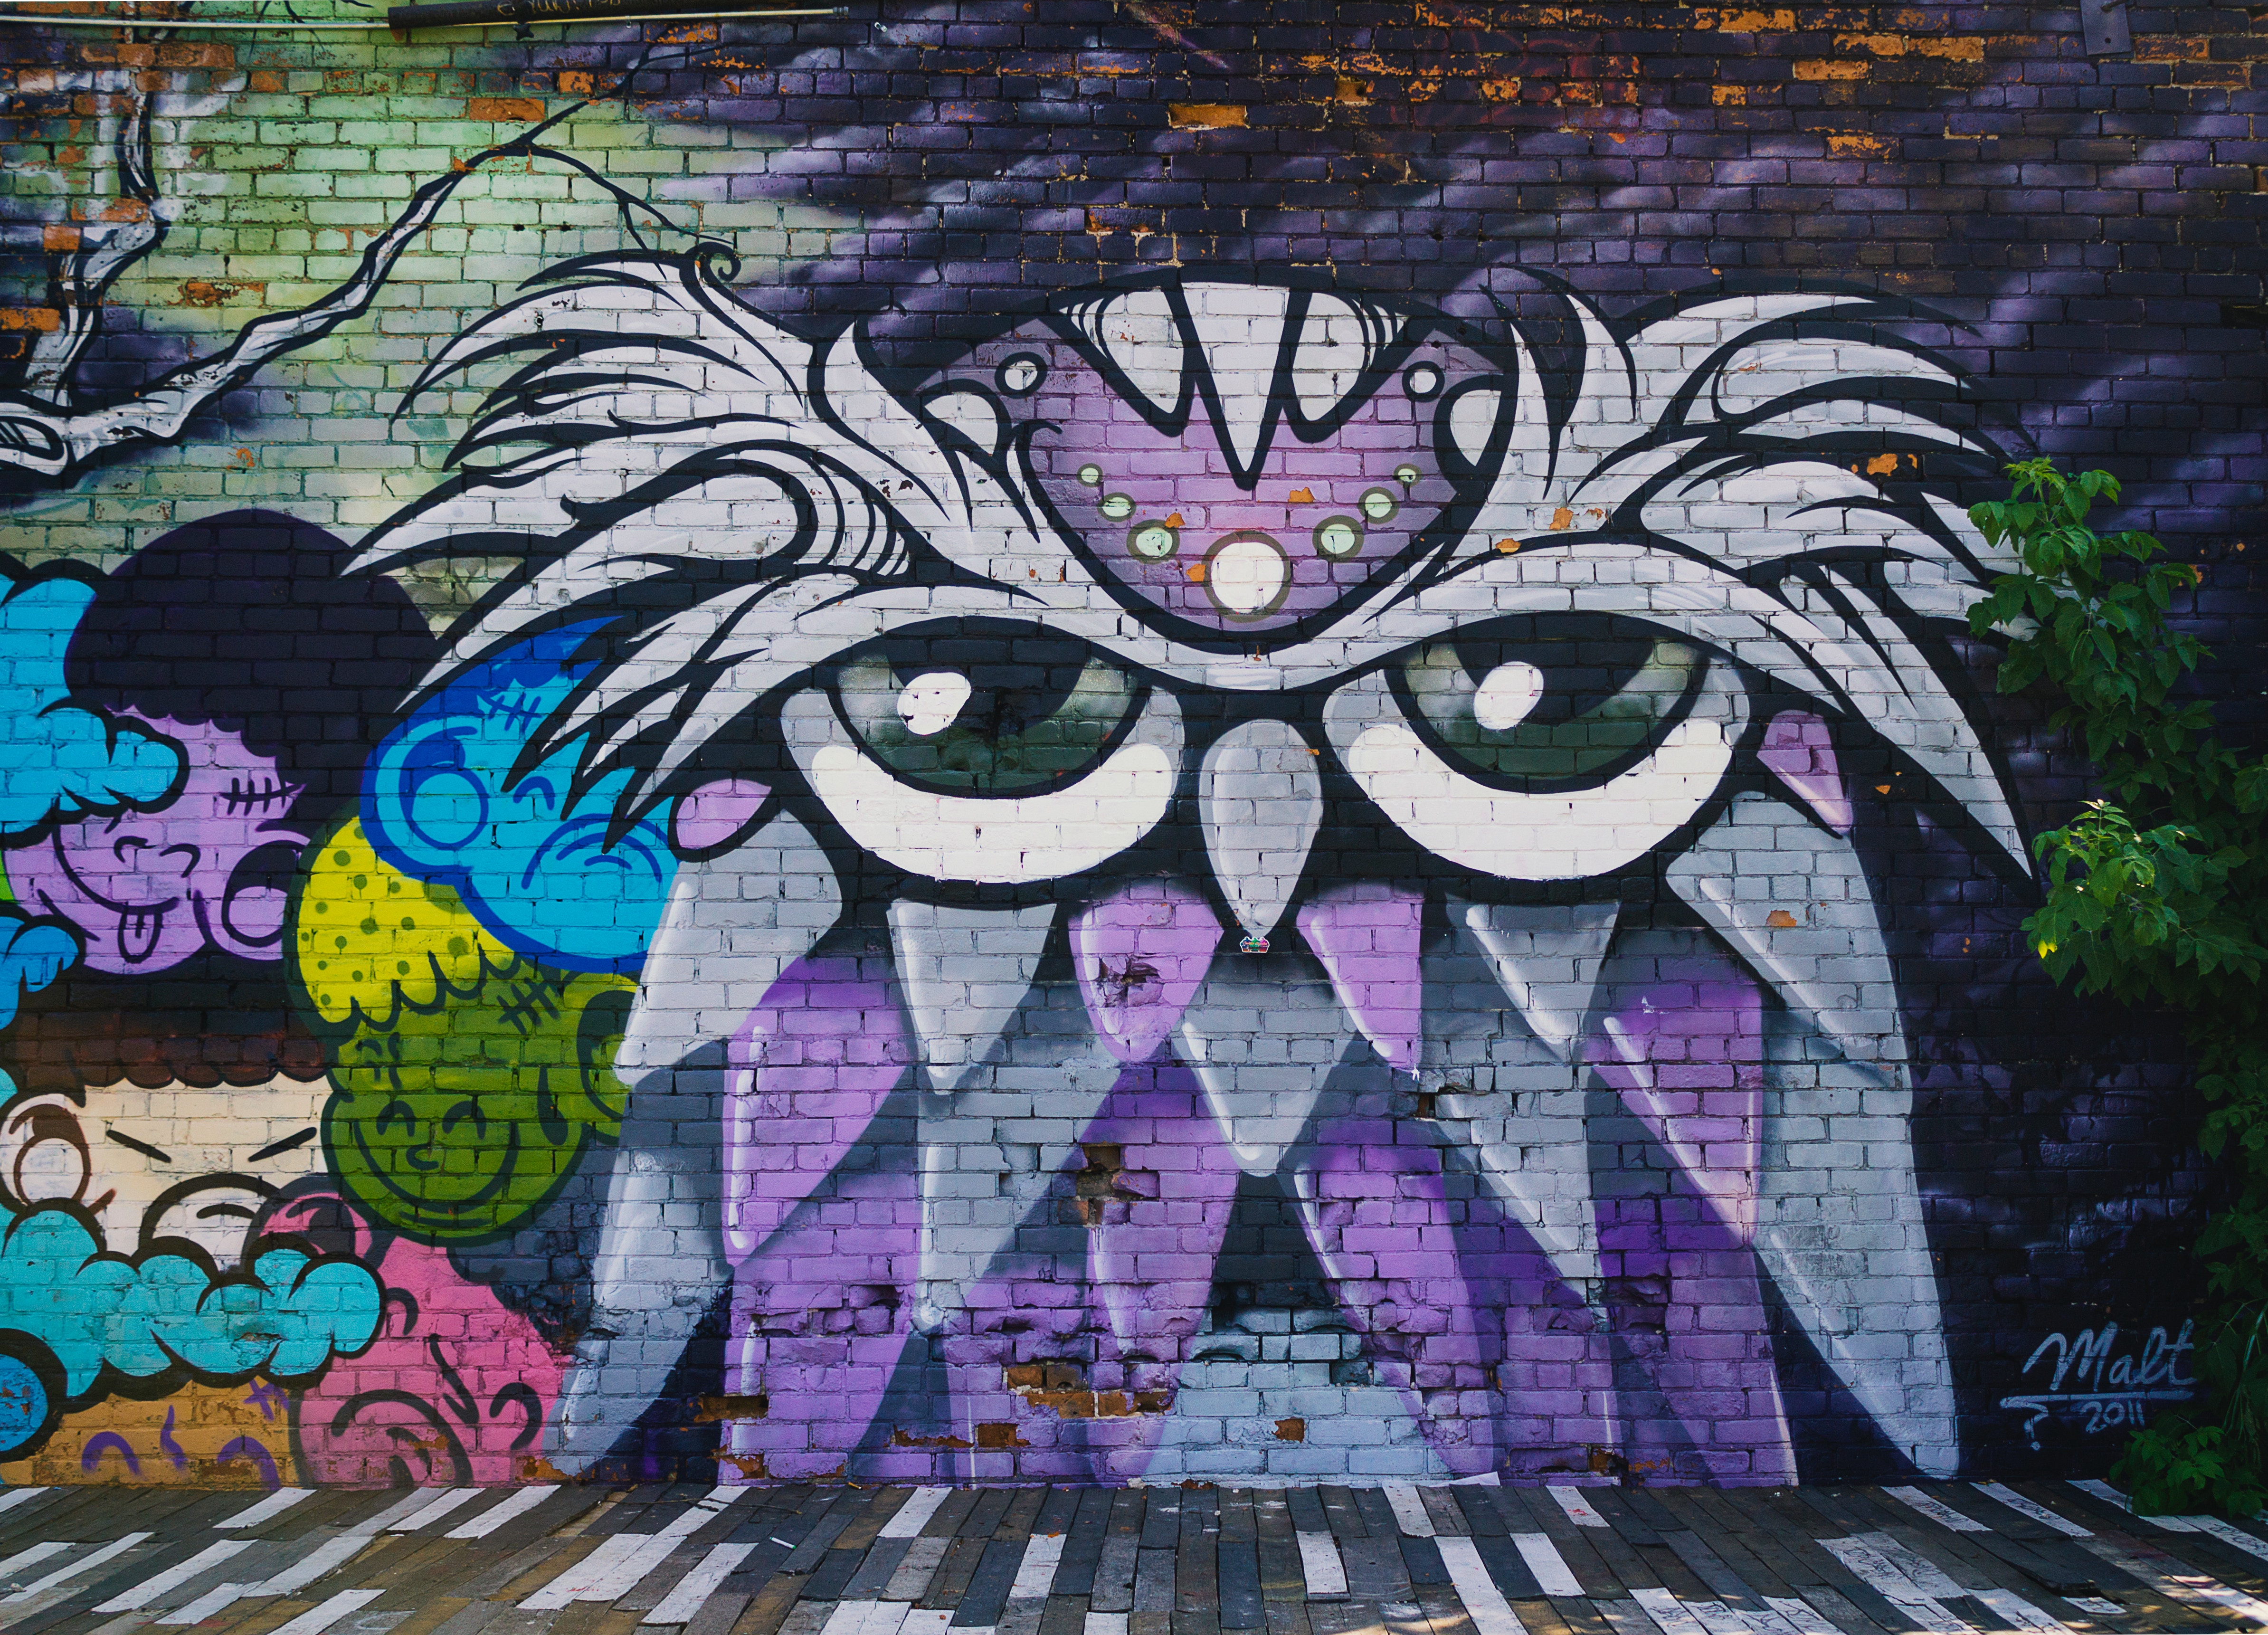 Cartoonish mural of a sleepy-looking owl